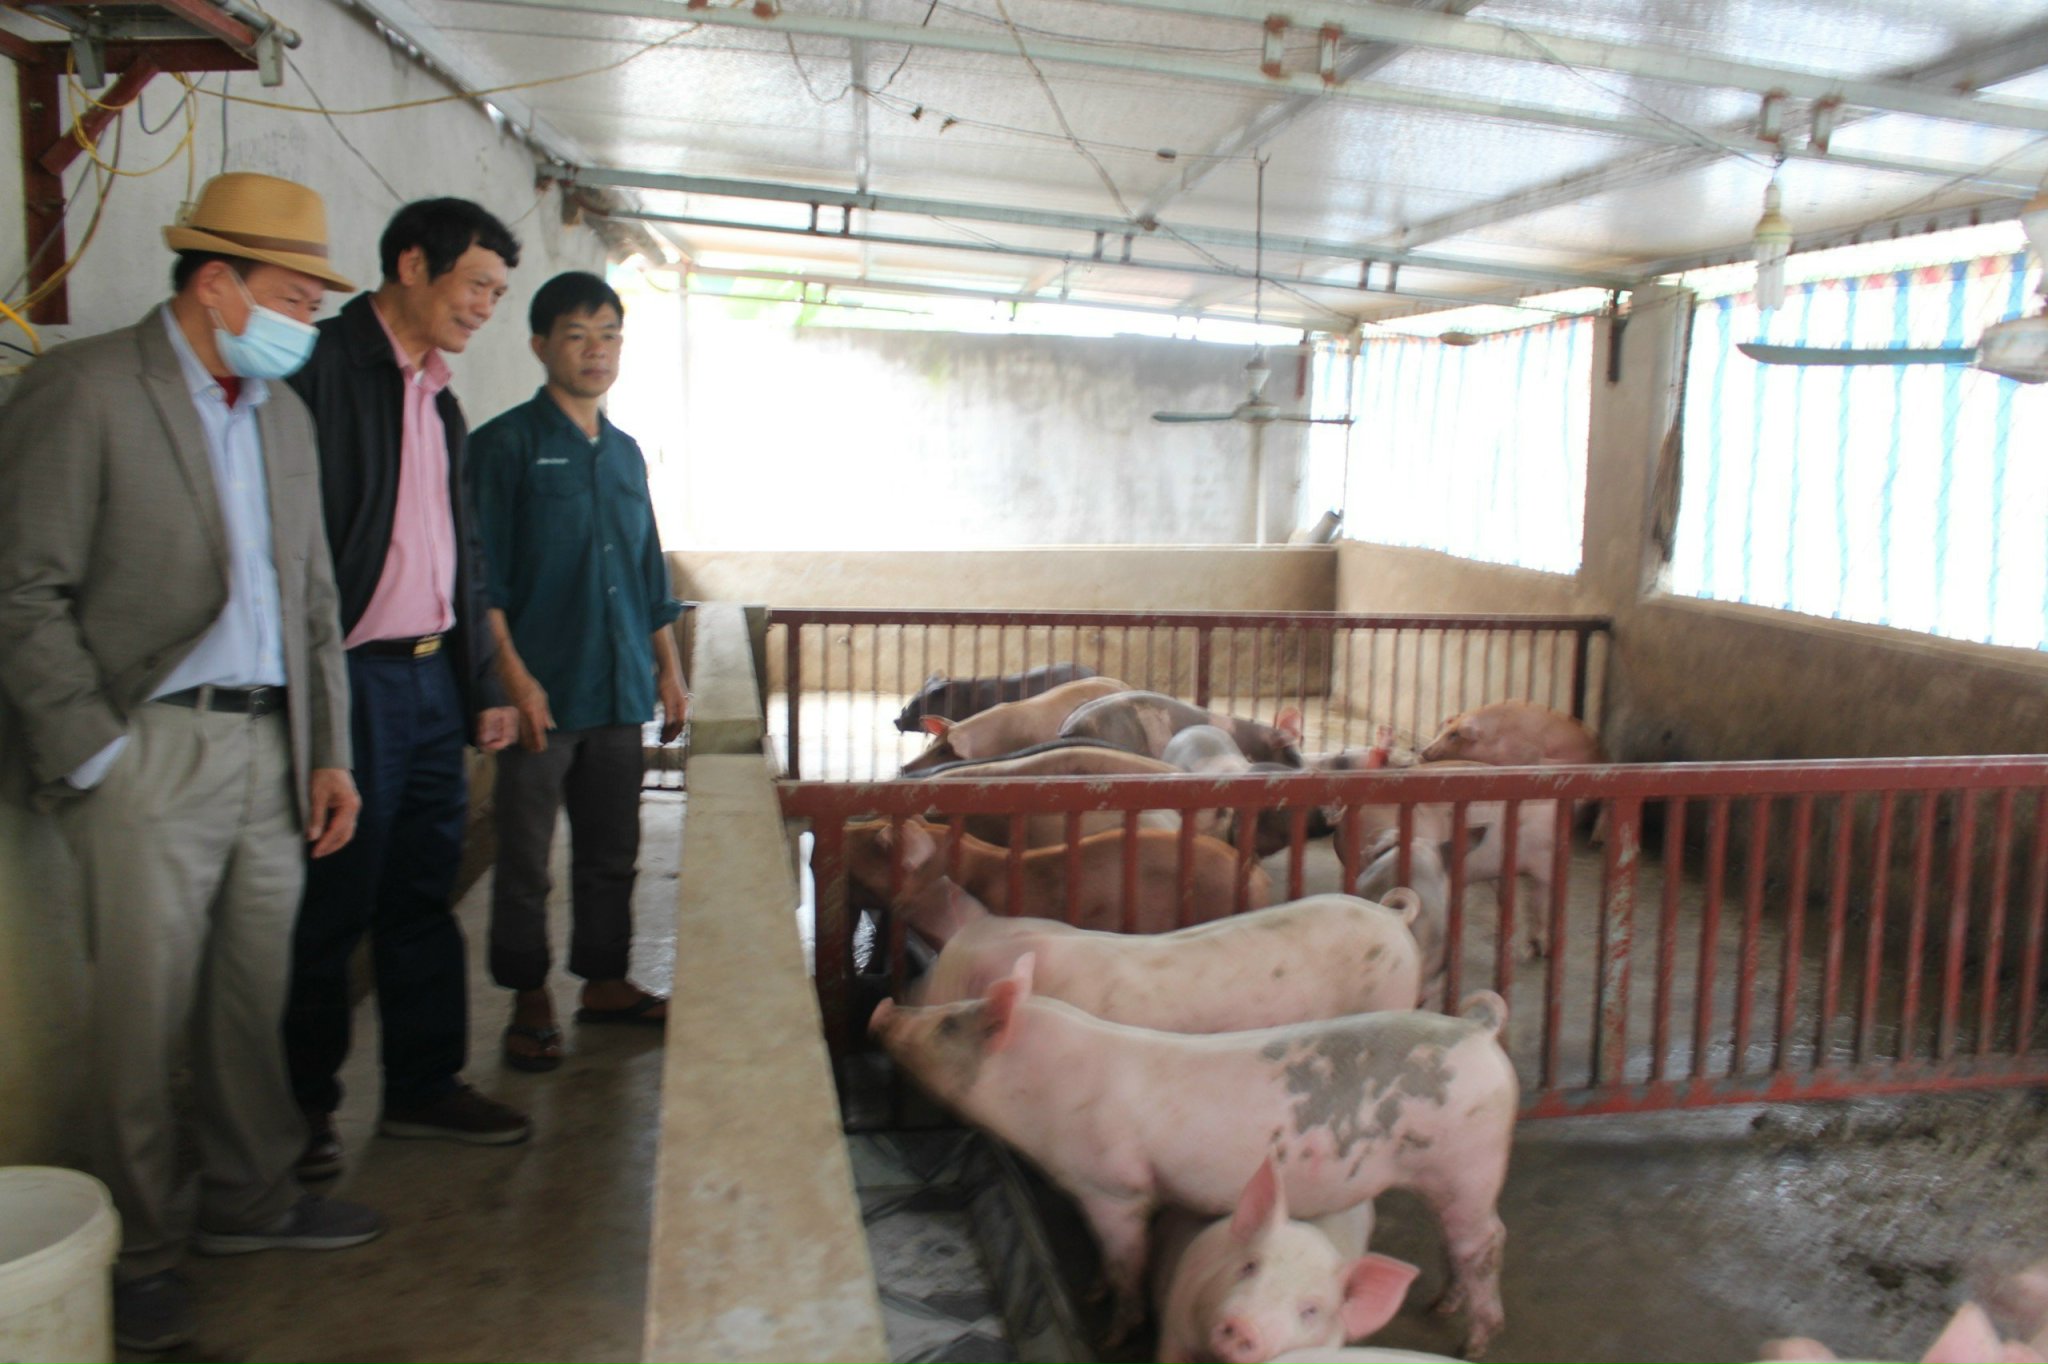 Đoàn tham quan Trang trại chăn nuôi của anh Dương Văn Hùng, xã Thanh Hòa, huyện Thanh Chương